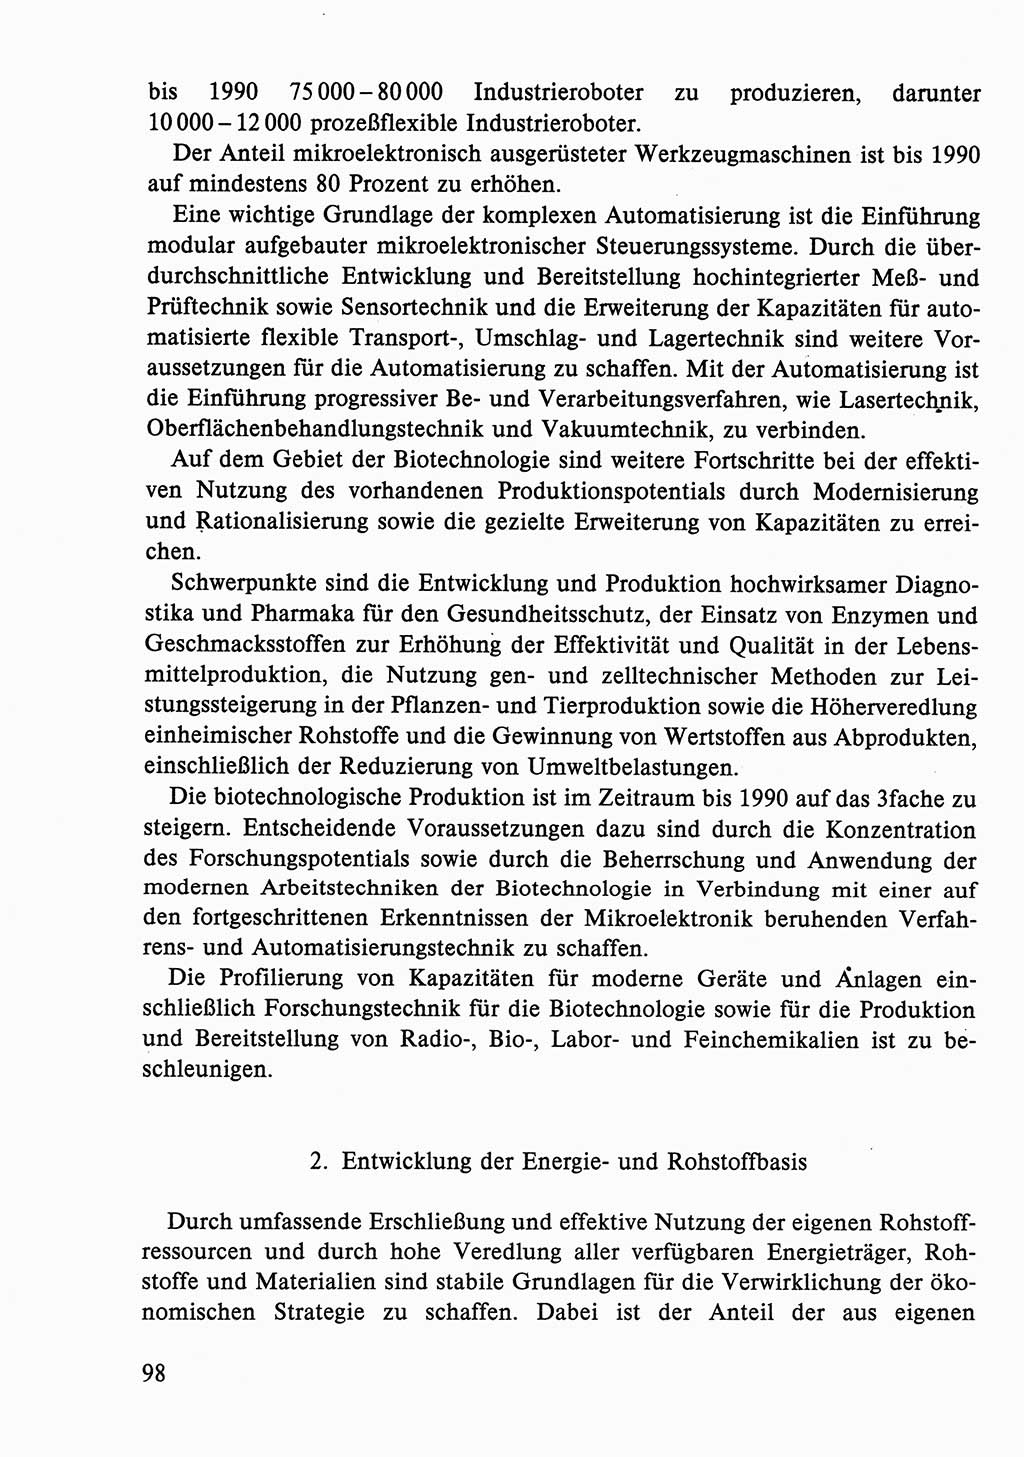 Dokumente der Sozialistischen Einheitspartei Deutschlands (SED) [Deutsche Demokratische Republik (DDR)] 1986-1987, Seite 98 (Dok. SED DDR 1986-1987, S. 98)